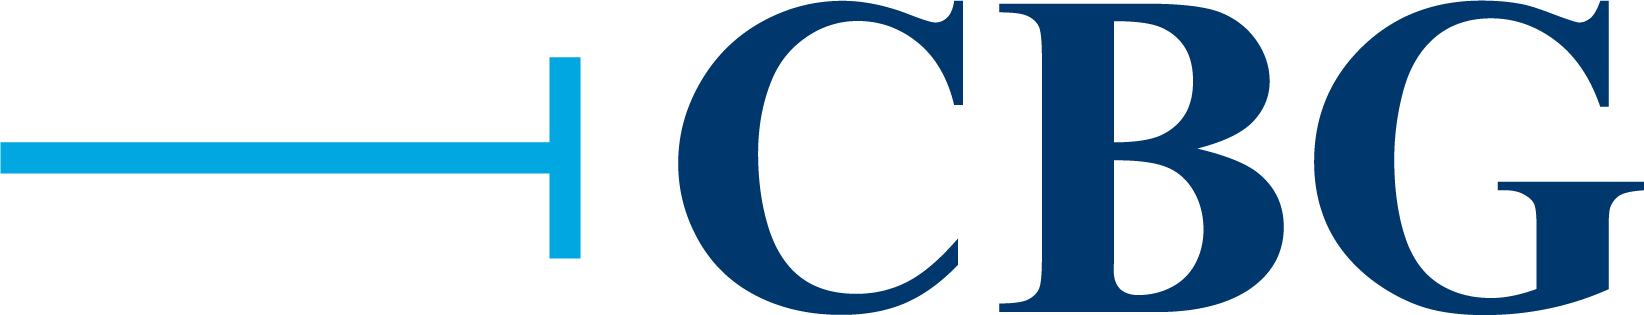 CBG Building Company Company Logo